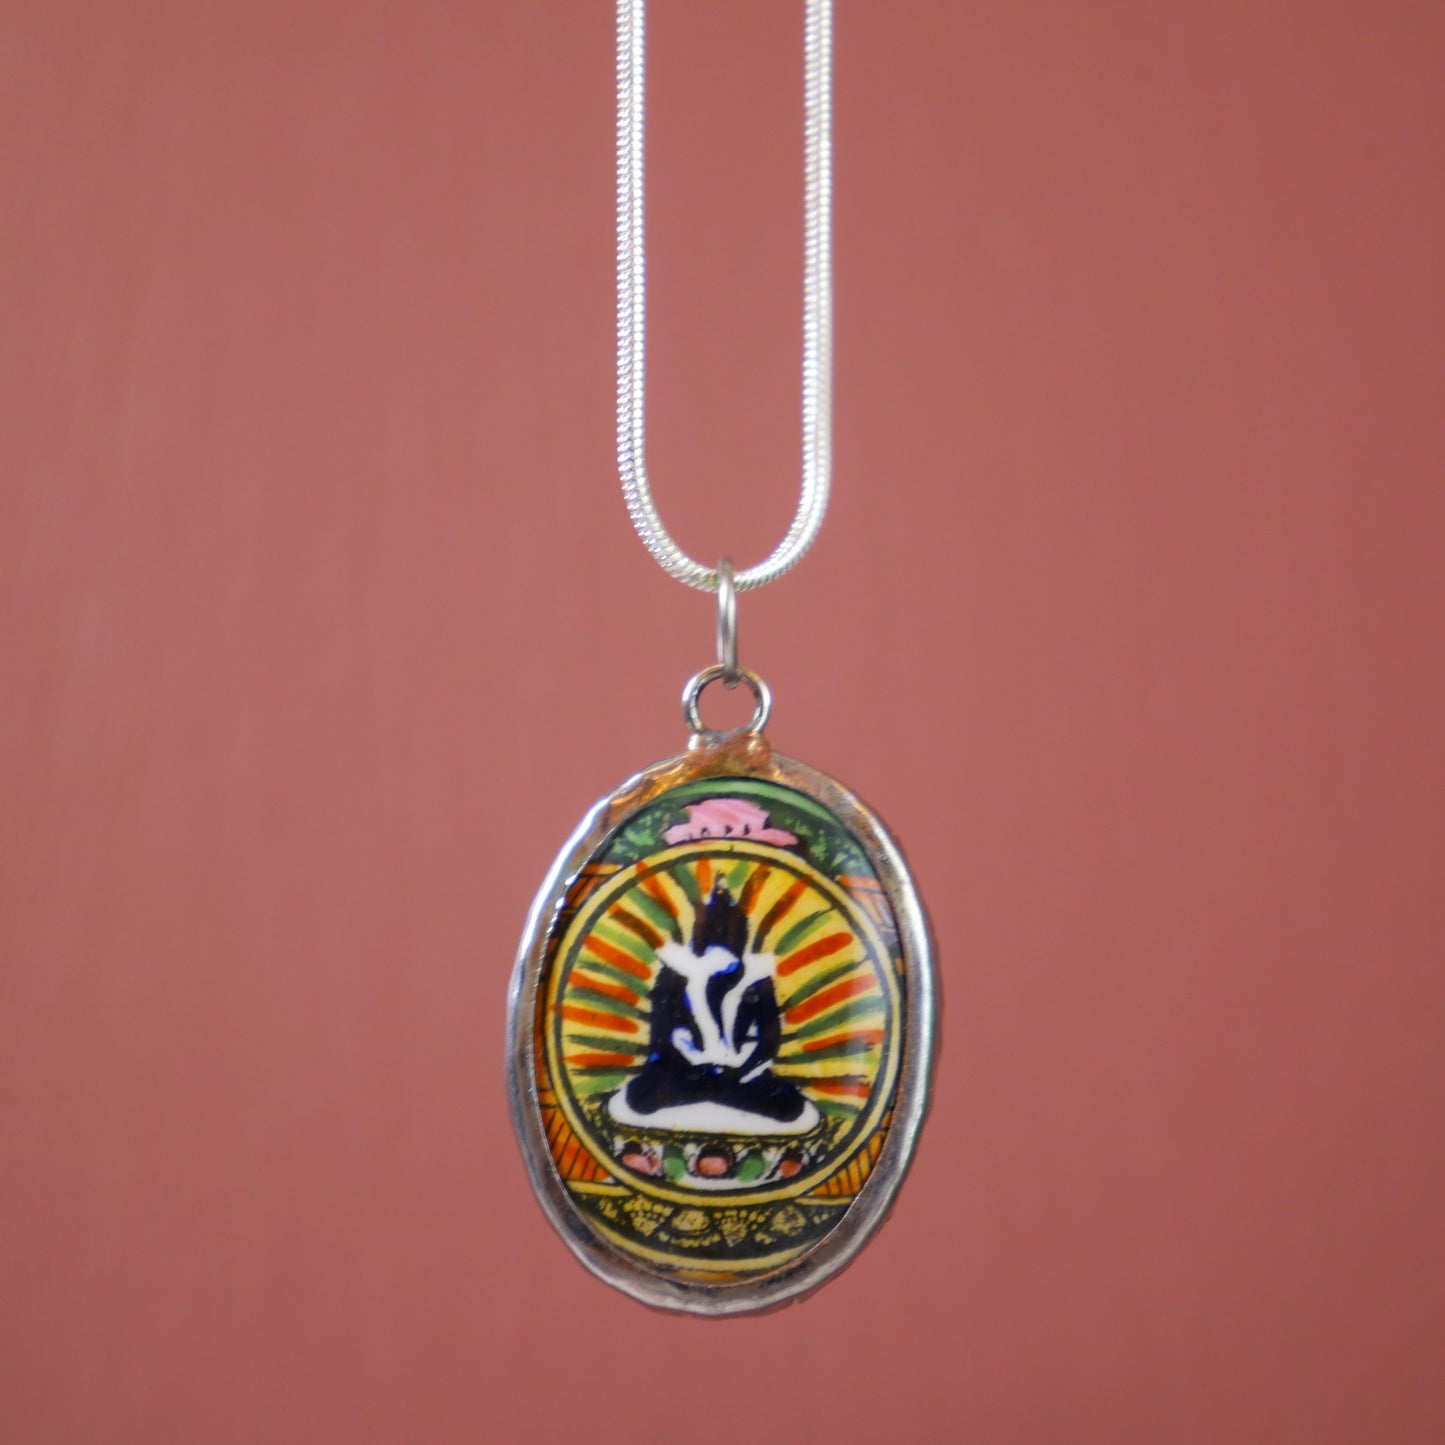 Shiva Shakti Necklace | Yab Yum Buddha Pendant | Buddhist and Hindu Jewelry Gift